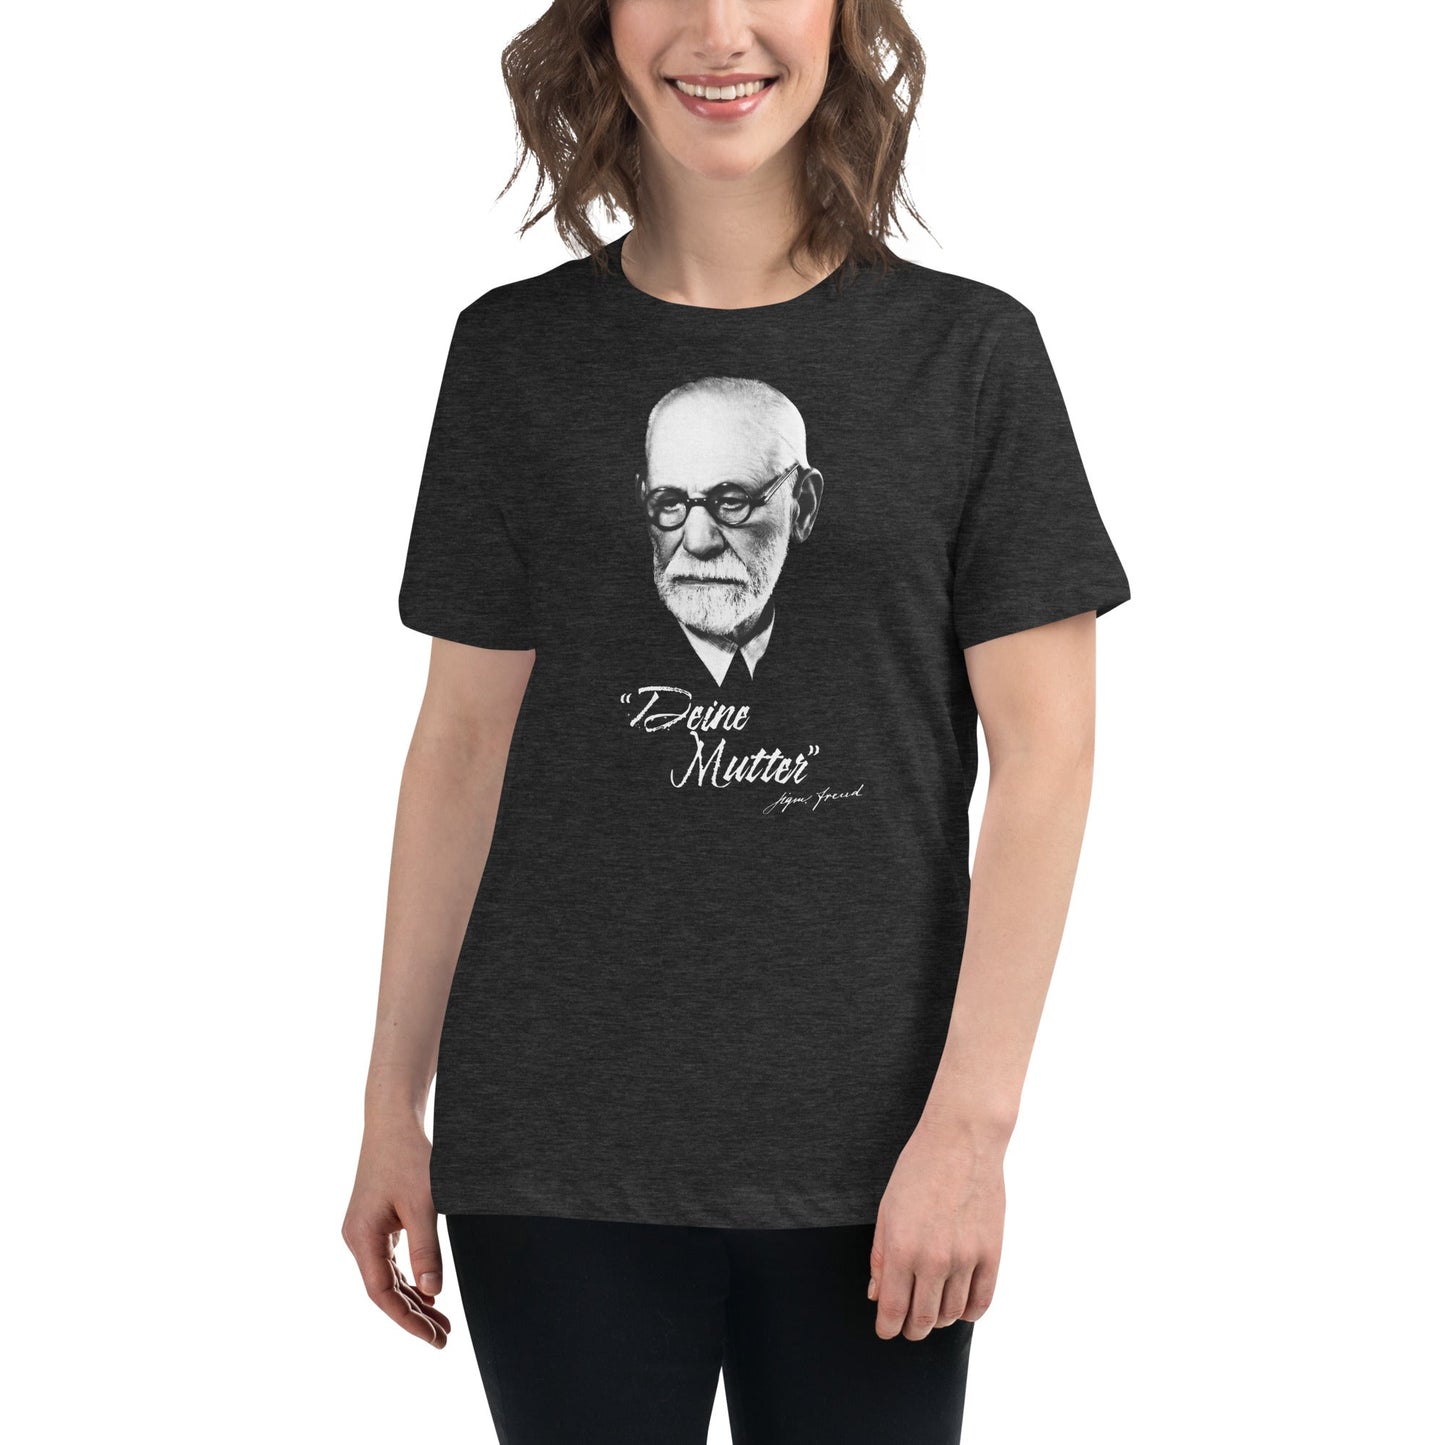 Sigmund Freud - Deine Mutter (DE) - Women's T-Shirt